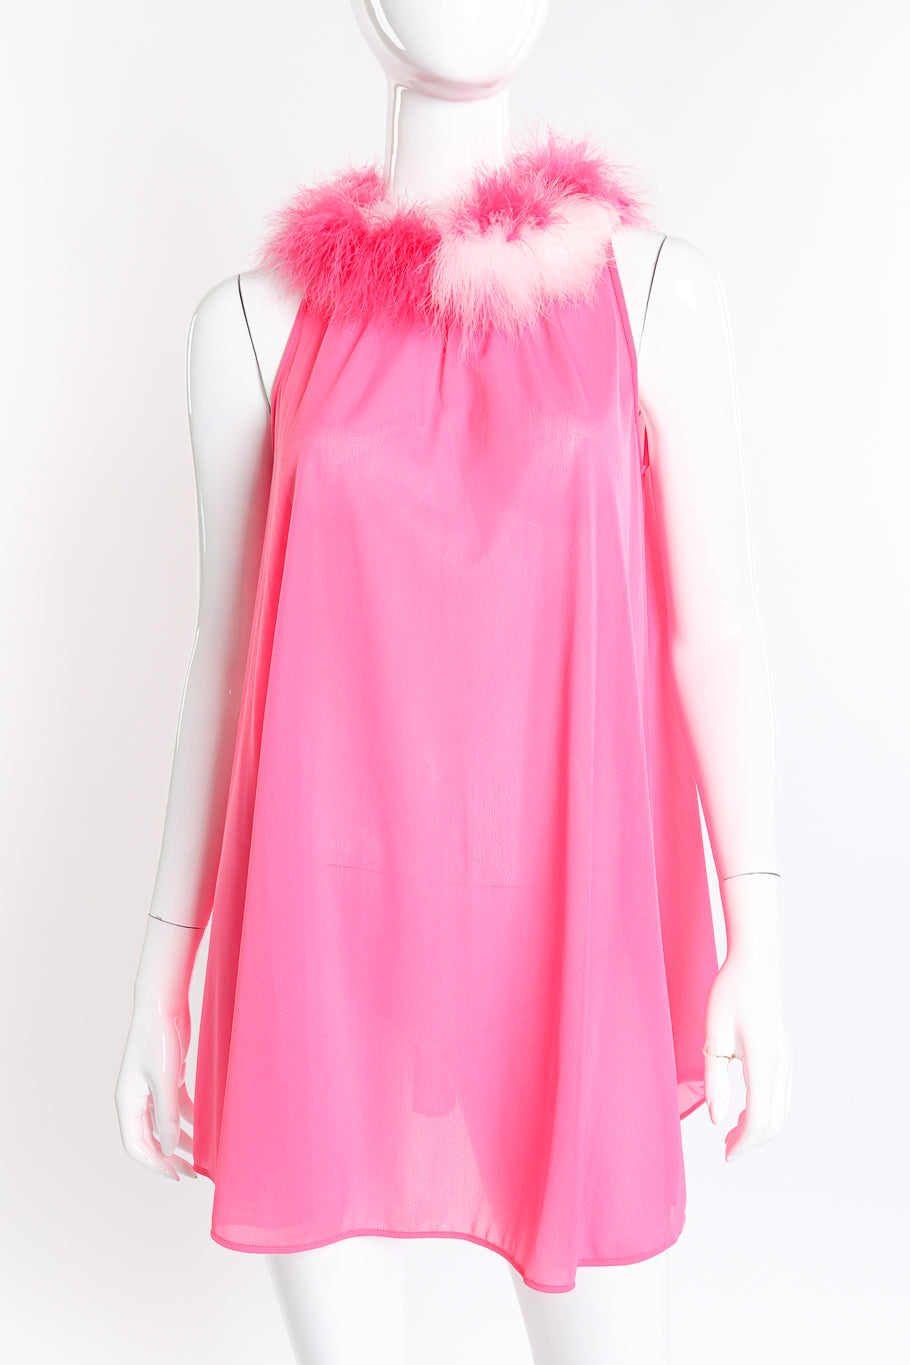 Vintage Flair Marabou Trim Top & Dress Set dress front on mannequin closeup @recess la